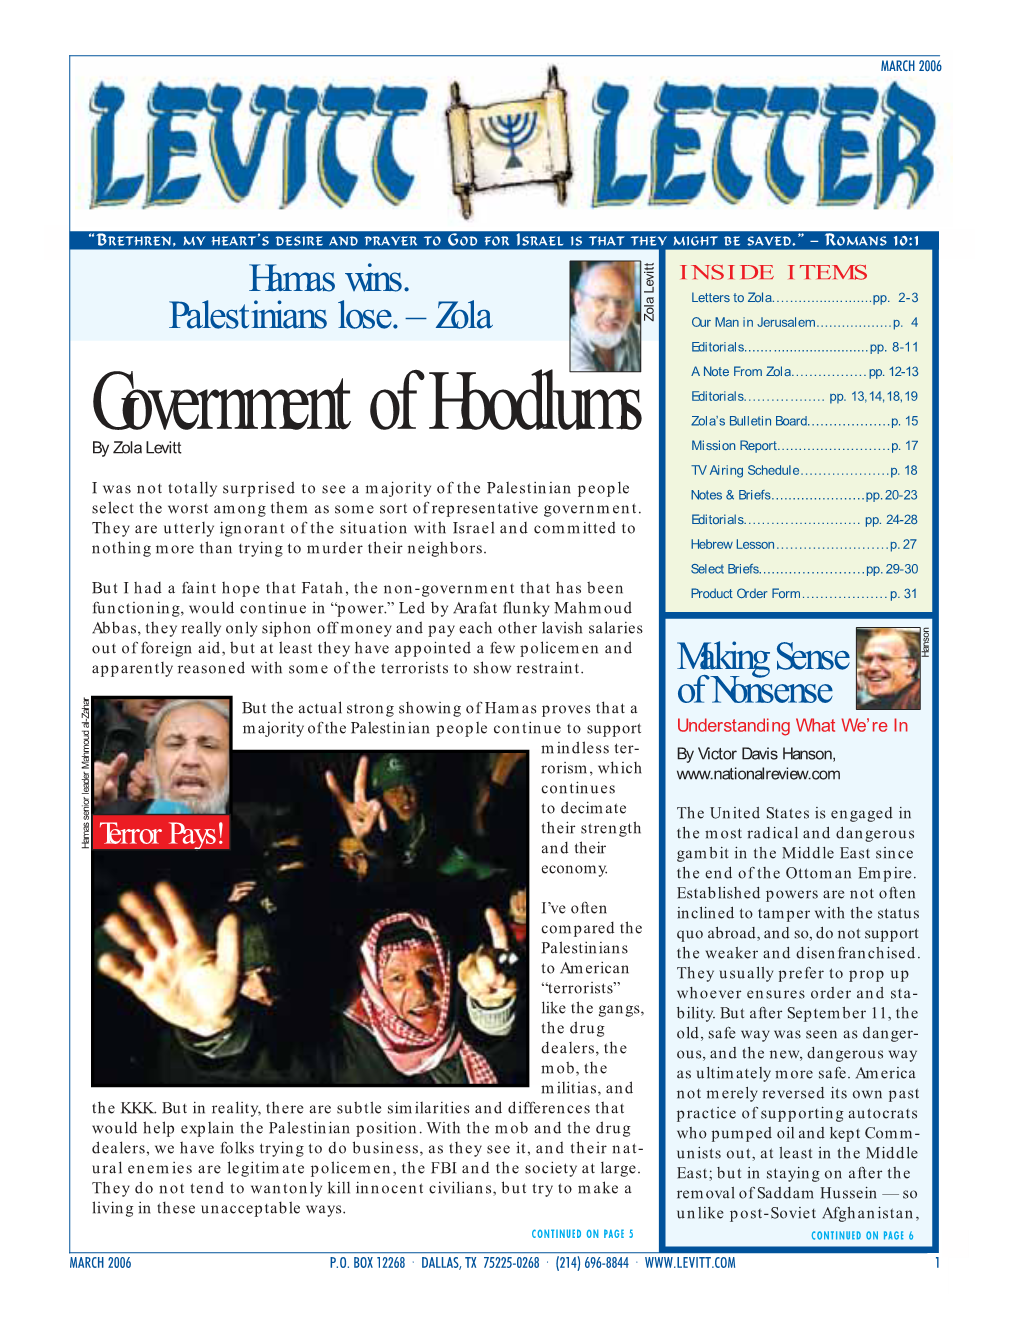 Levitt Letter, March 2006